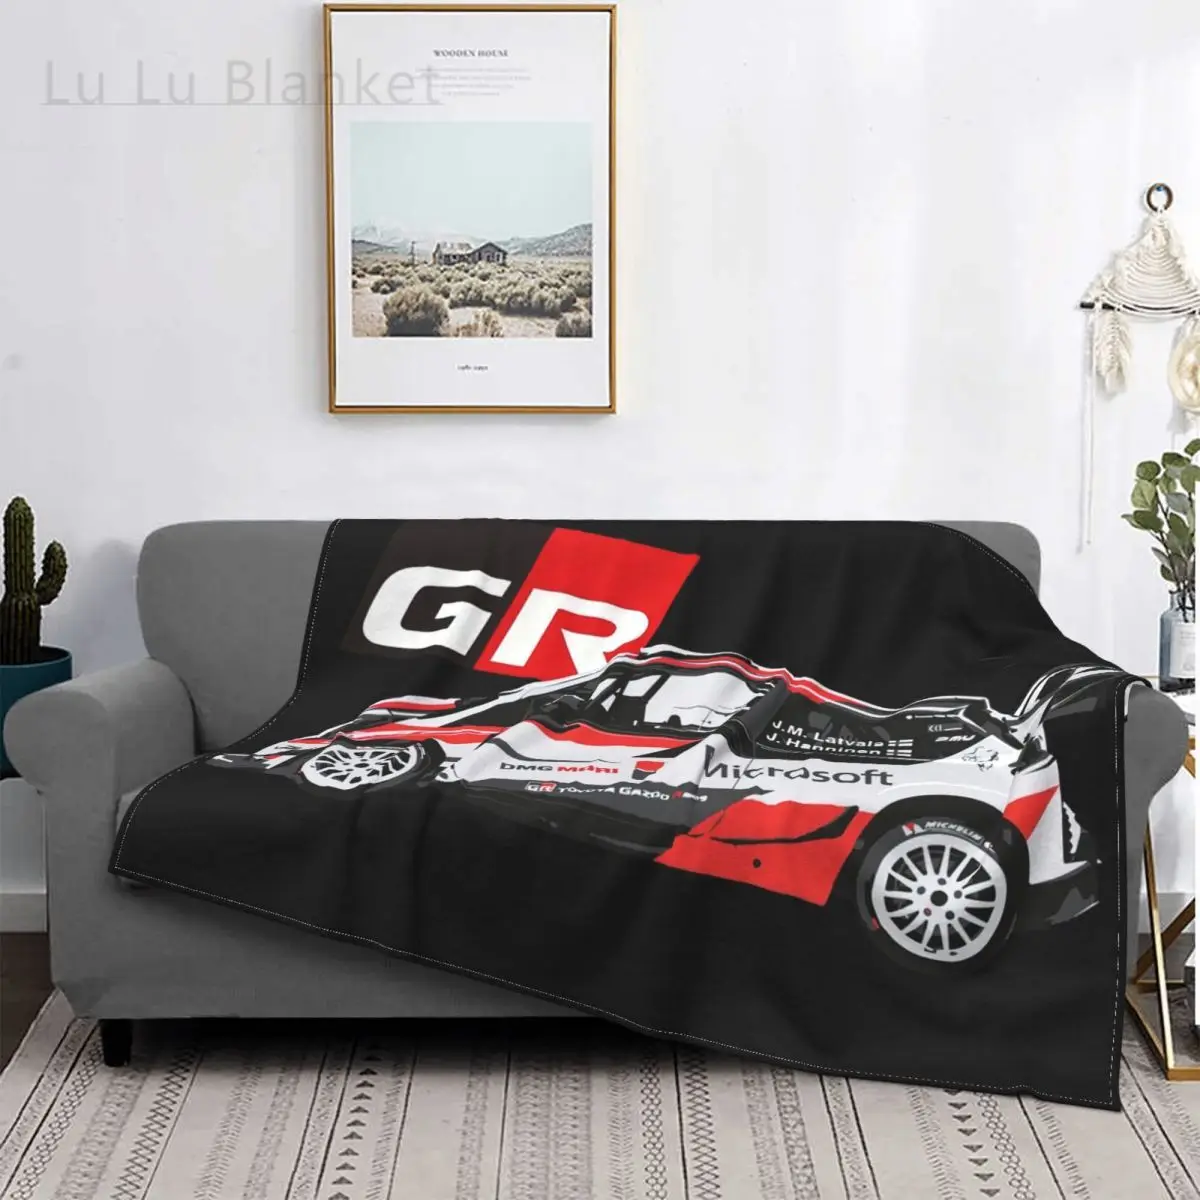 

Wrc Gr Yaris - Gazoo Racing Hot Sale Printing High Qiality Flannel Blanket Sti Wrx Wrx Sti Sportscar Evo Rally Impreza Supercar